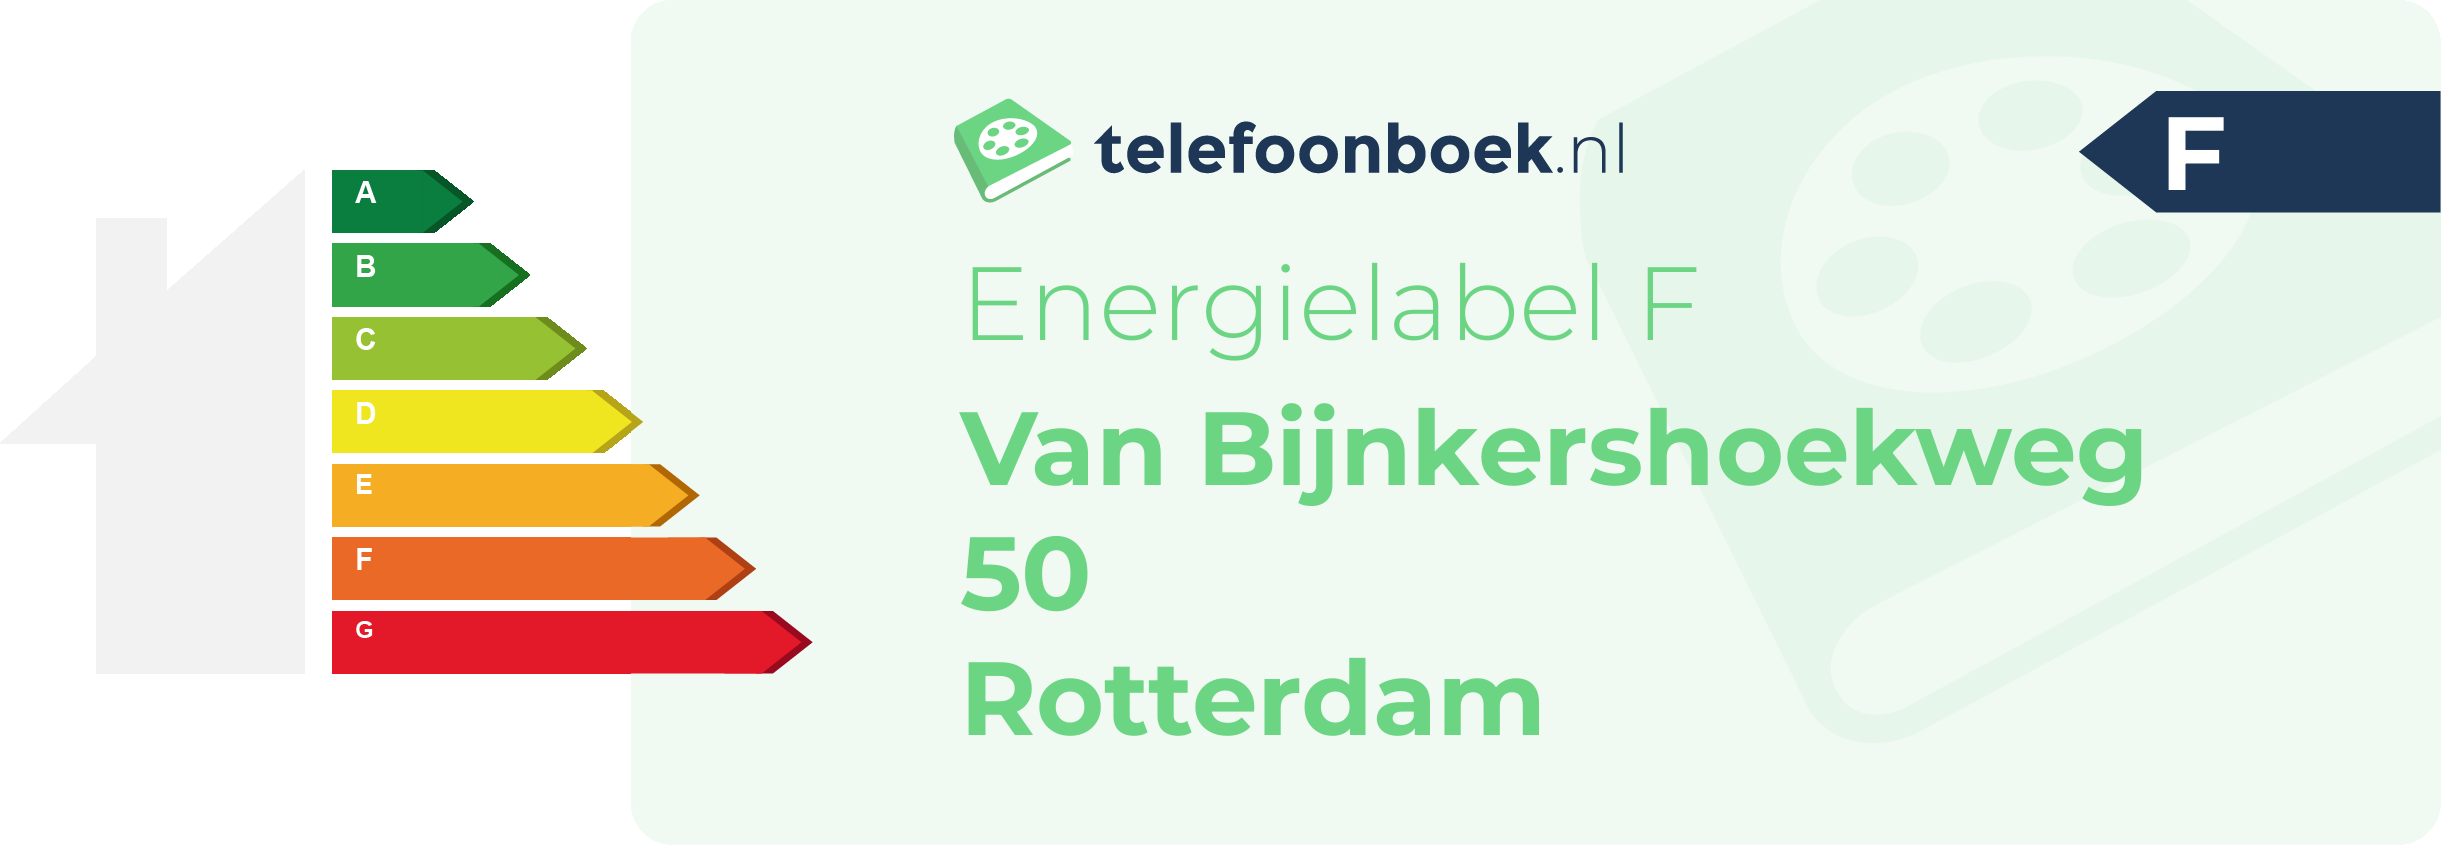 Energielabel Van Bijnkershoekweg 50 Rotterdam